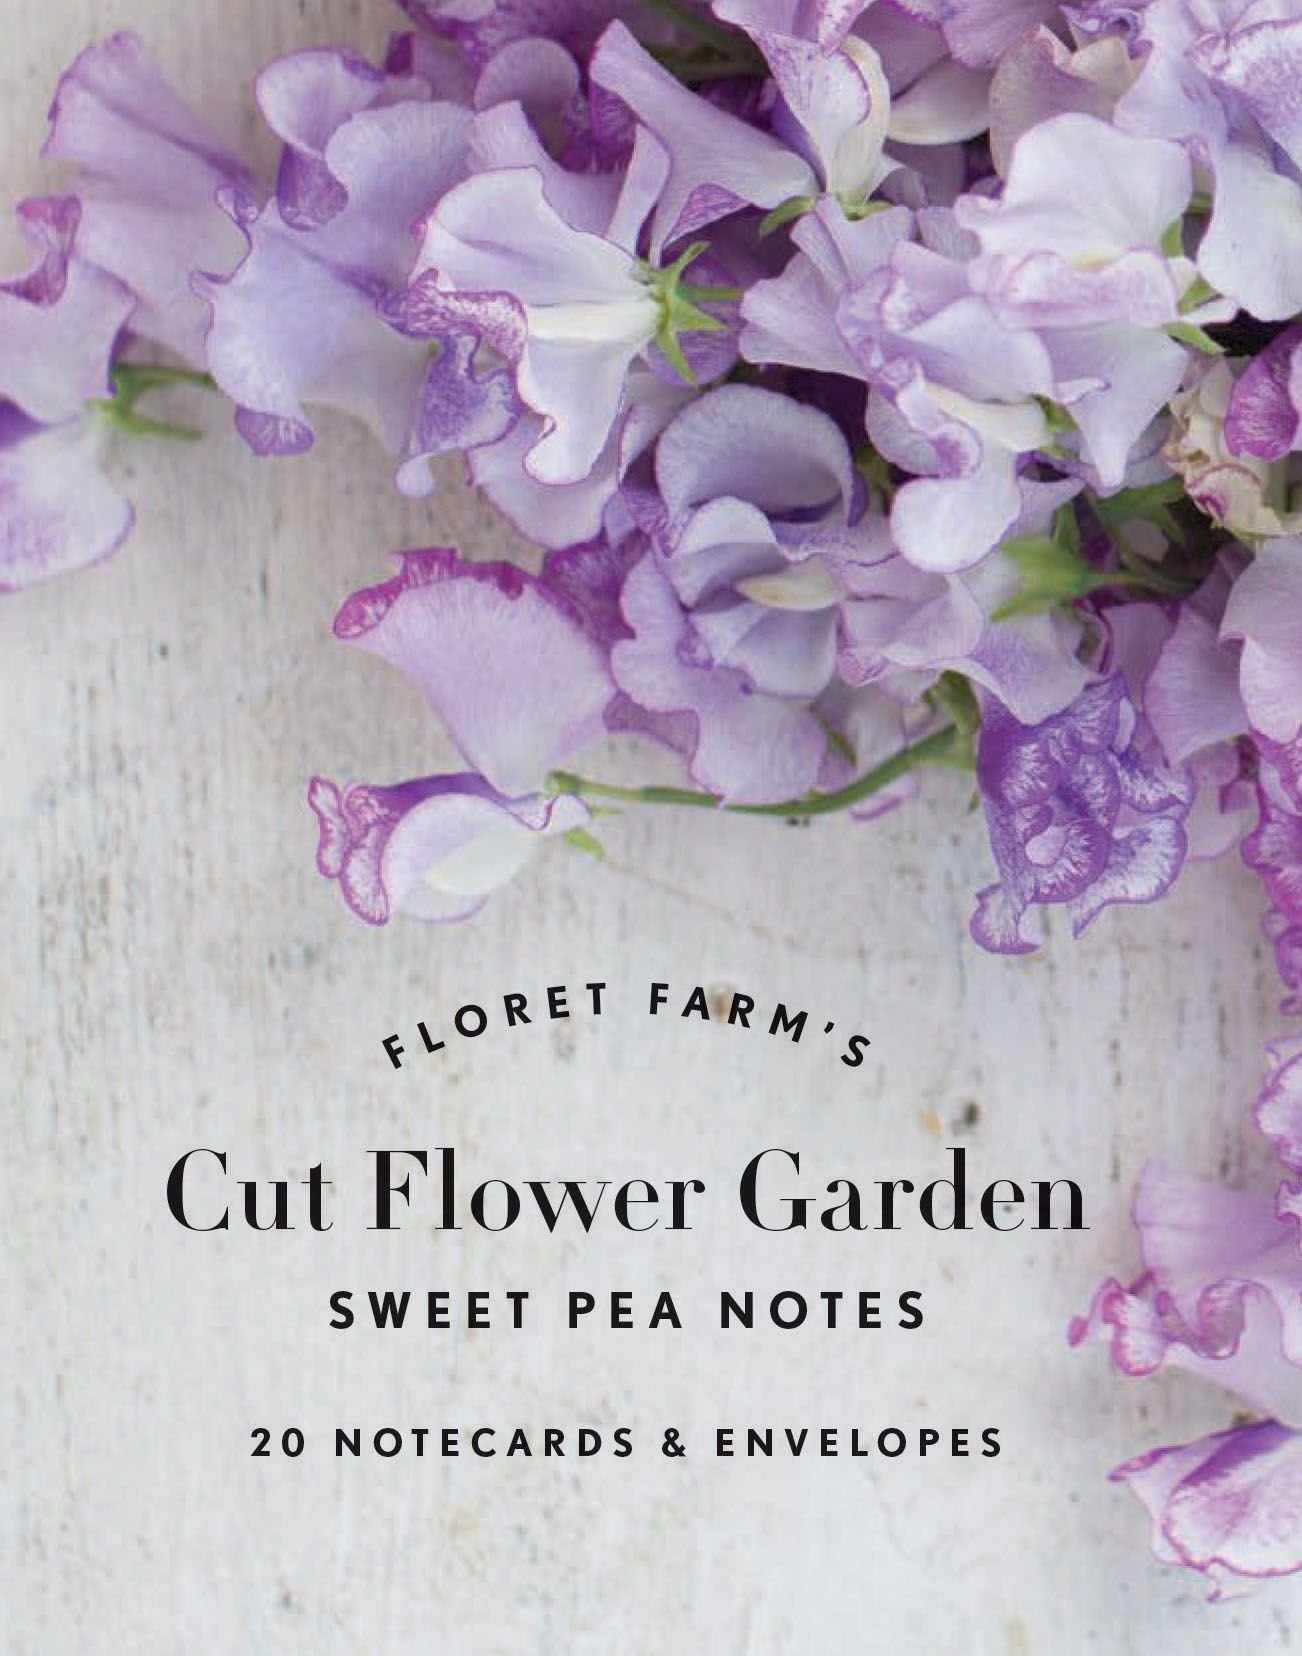  Galison Floret Farm's Cut Flower Garden 500 Piece